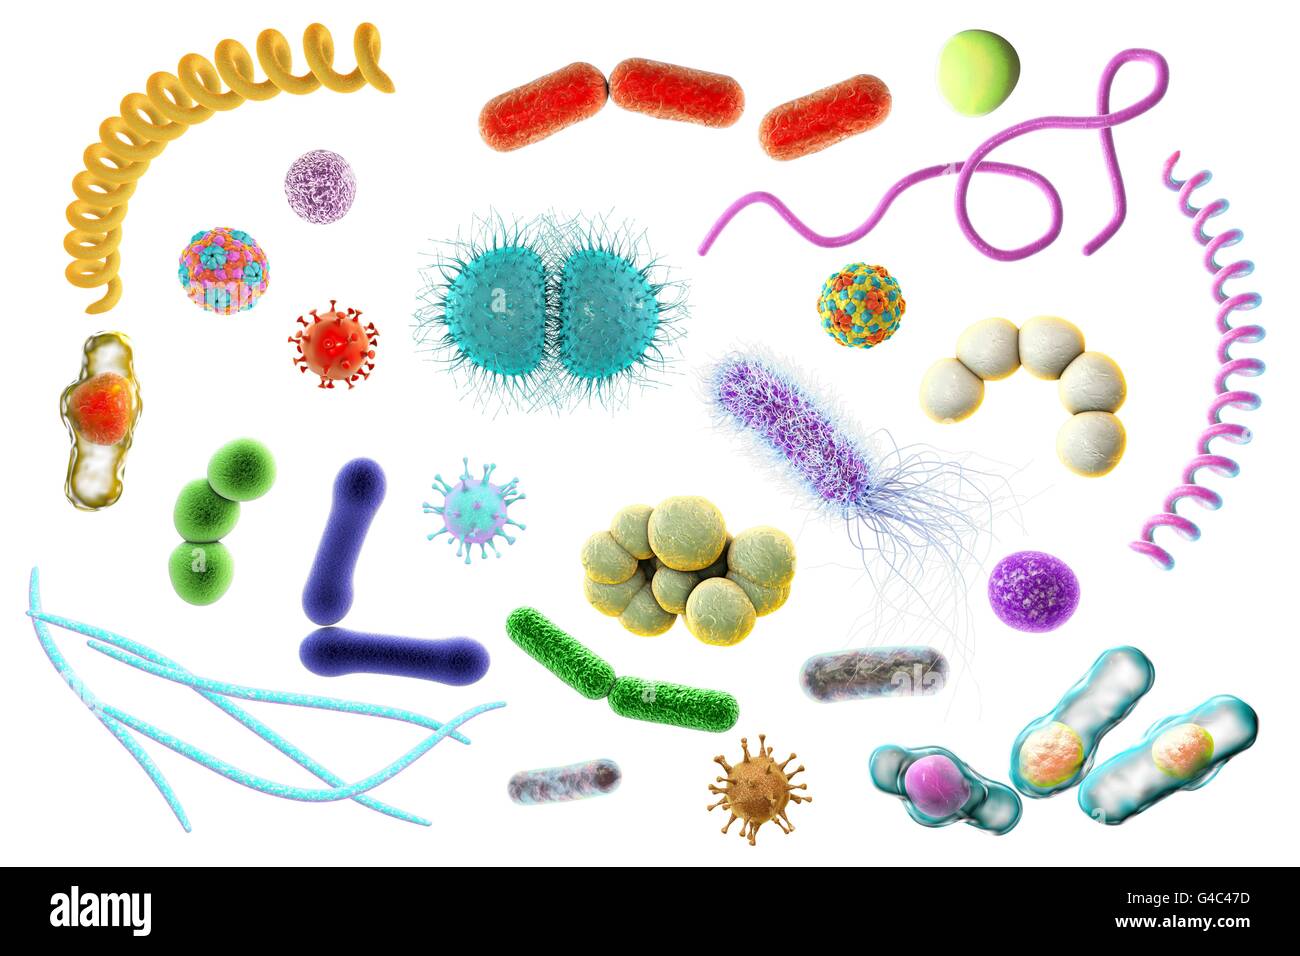 Les microbes. Illustration d'ordinateur d'un mélange contenant des microorganismes (bactéries et virus de types différents. Banque D'Images